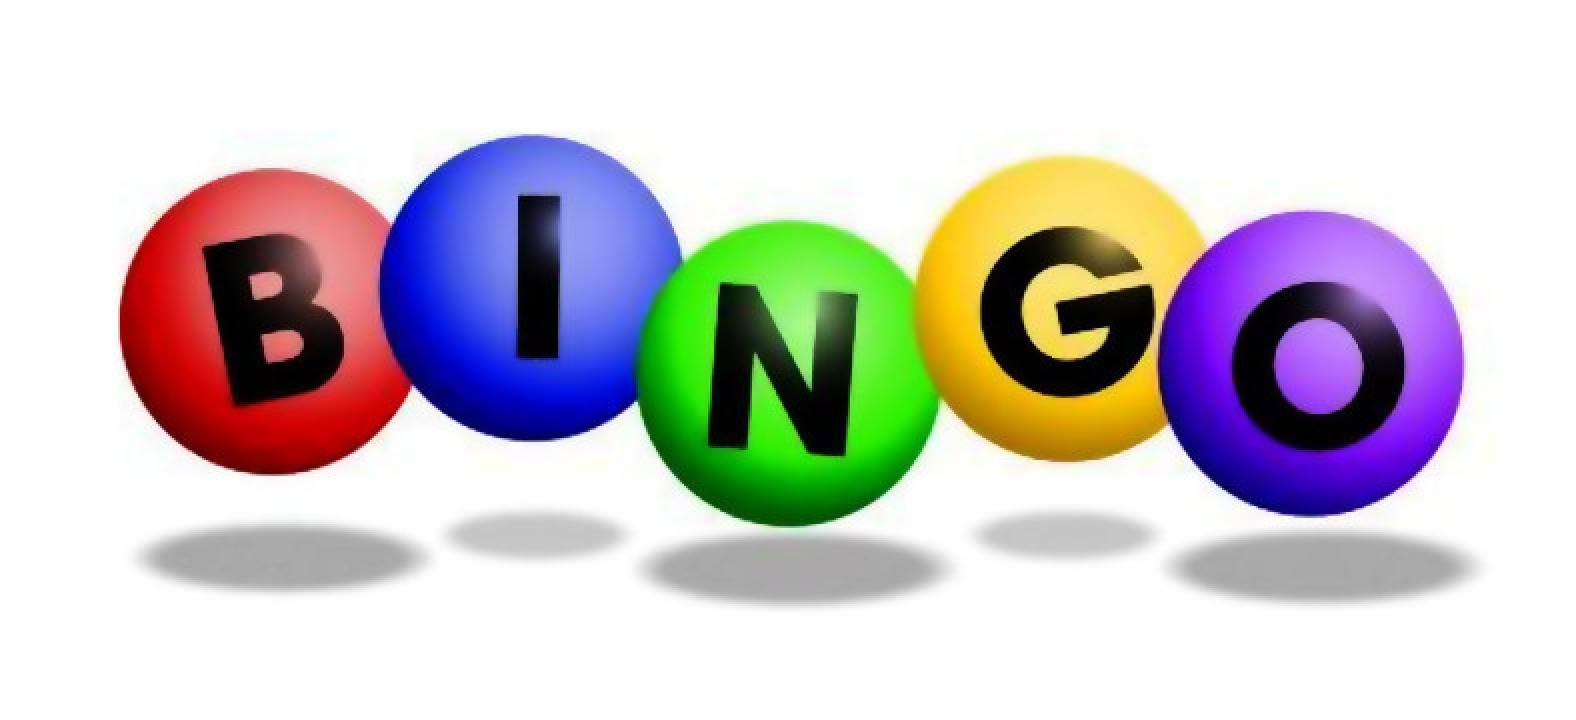 bingo online valendo dinheiro de verdade